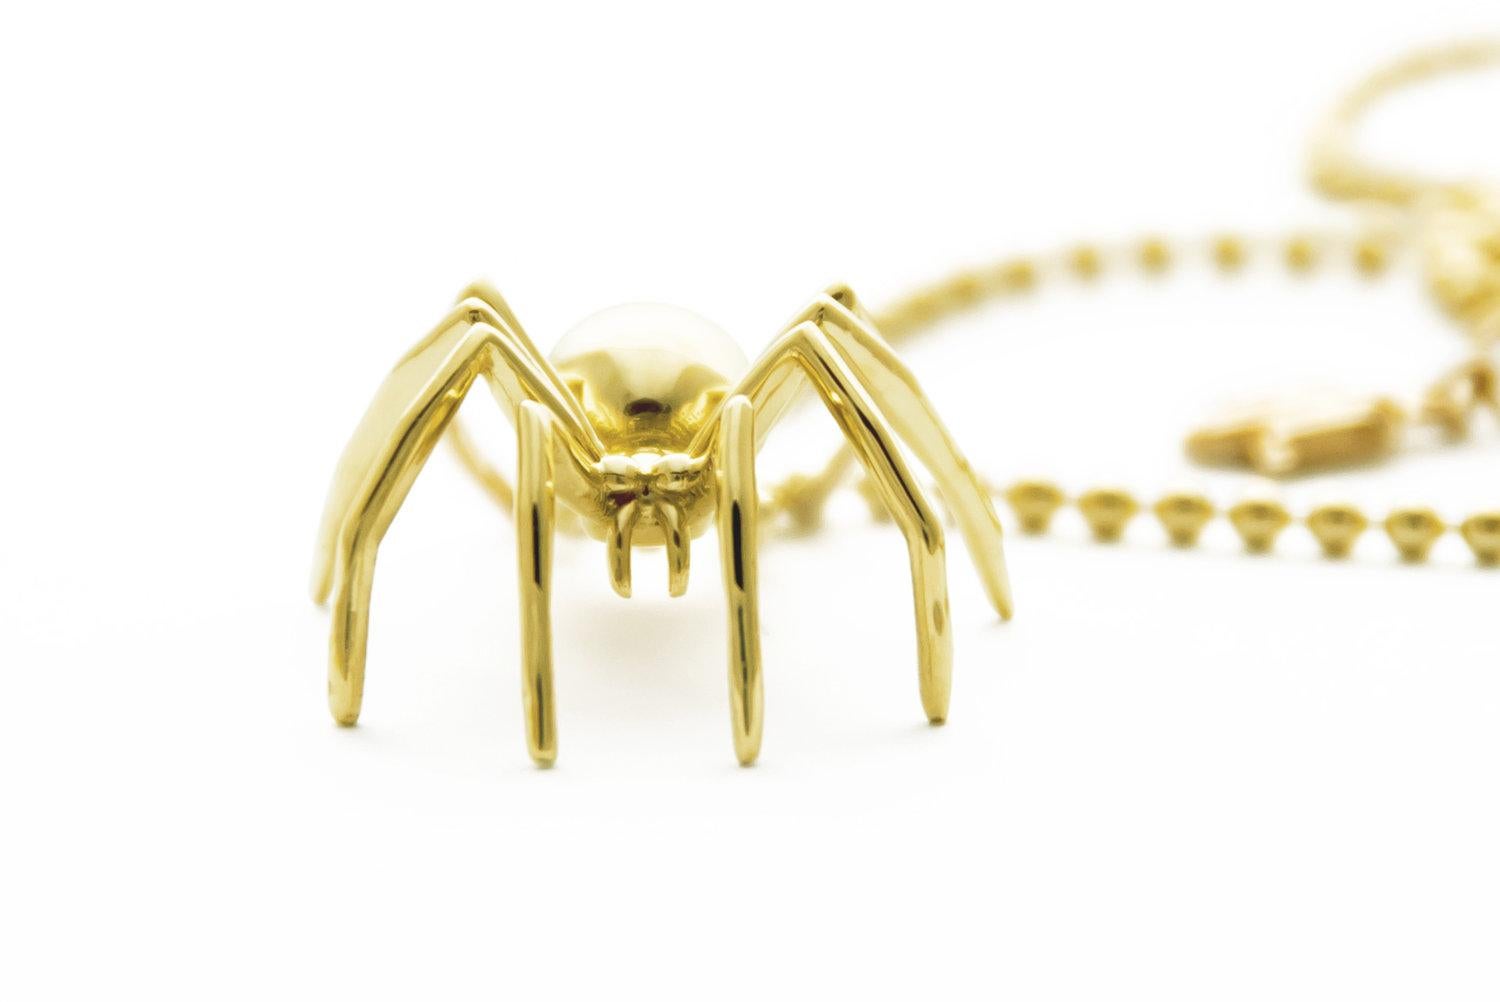 Découvrez l'extraordinaire pendentif Medium Spider en or jaune massif, une incarnation étonnante de la créativité et de l'autodétermination. Symbole de la maîtrise de son propre destin, l'araignée a longtemps captivé notre imagination en tant que